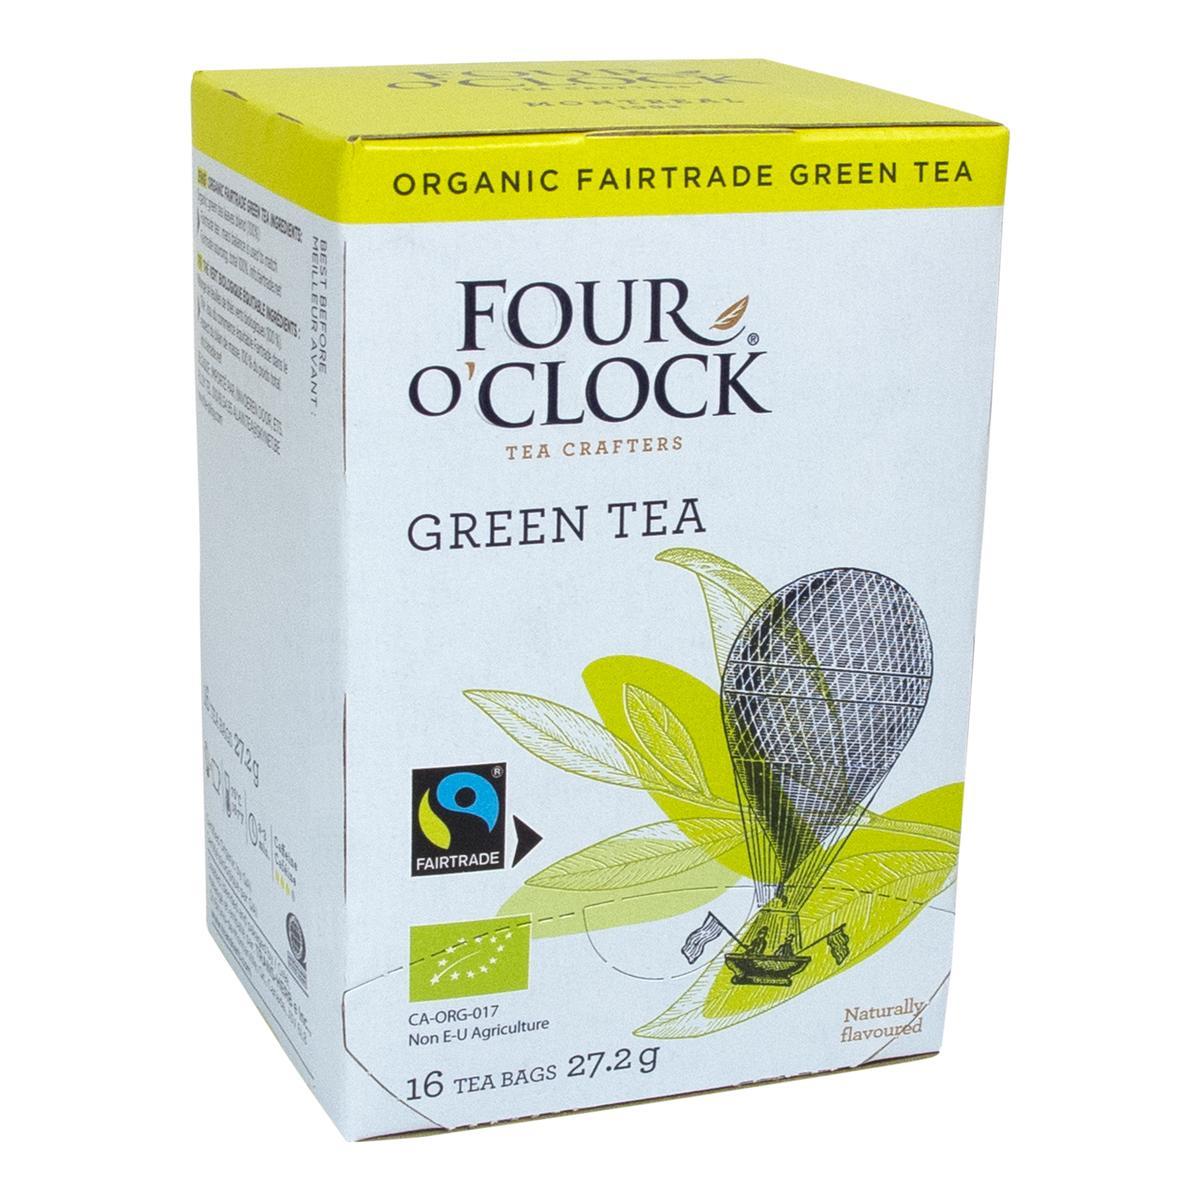 Four O’Clock's Four O'Clock GREEN TEA '